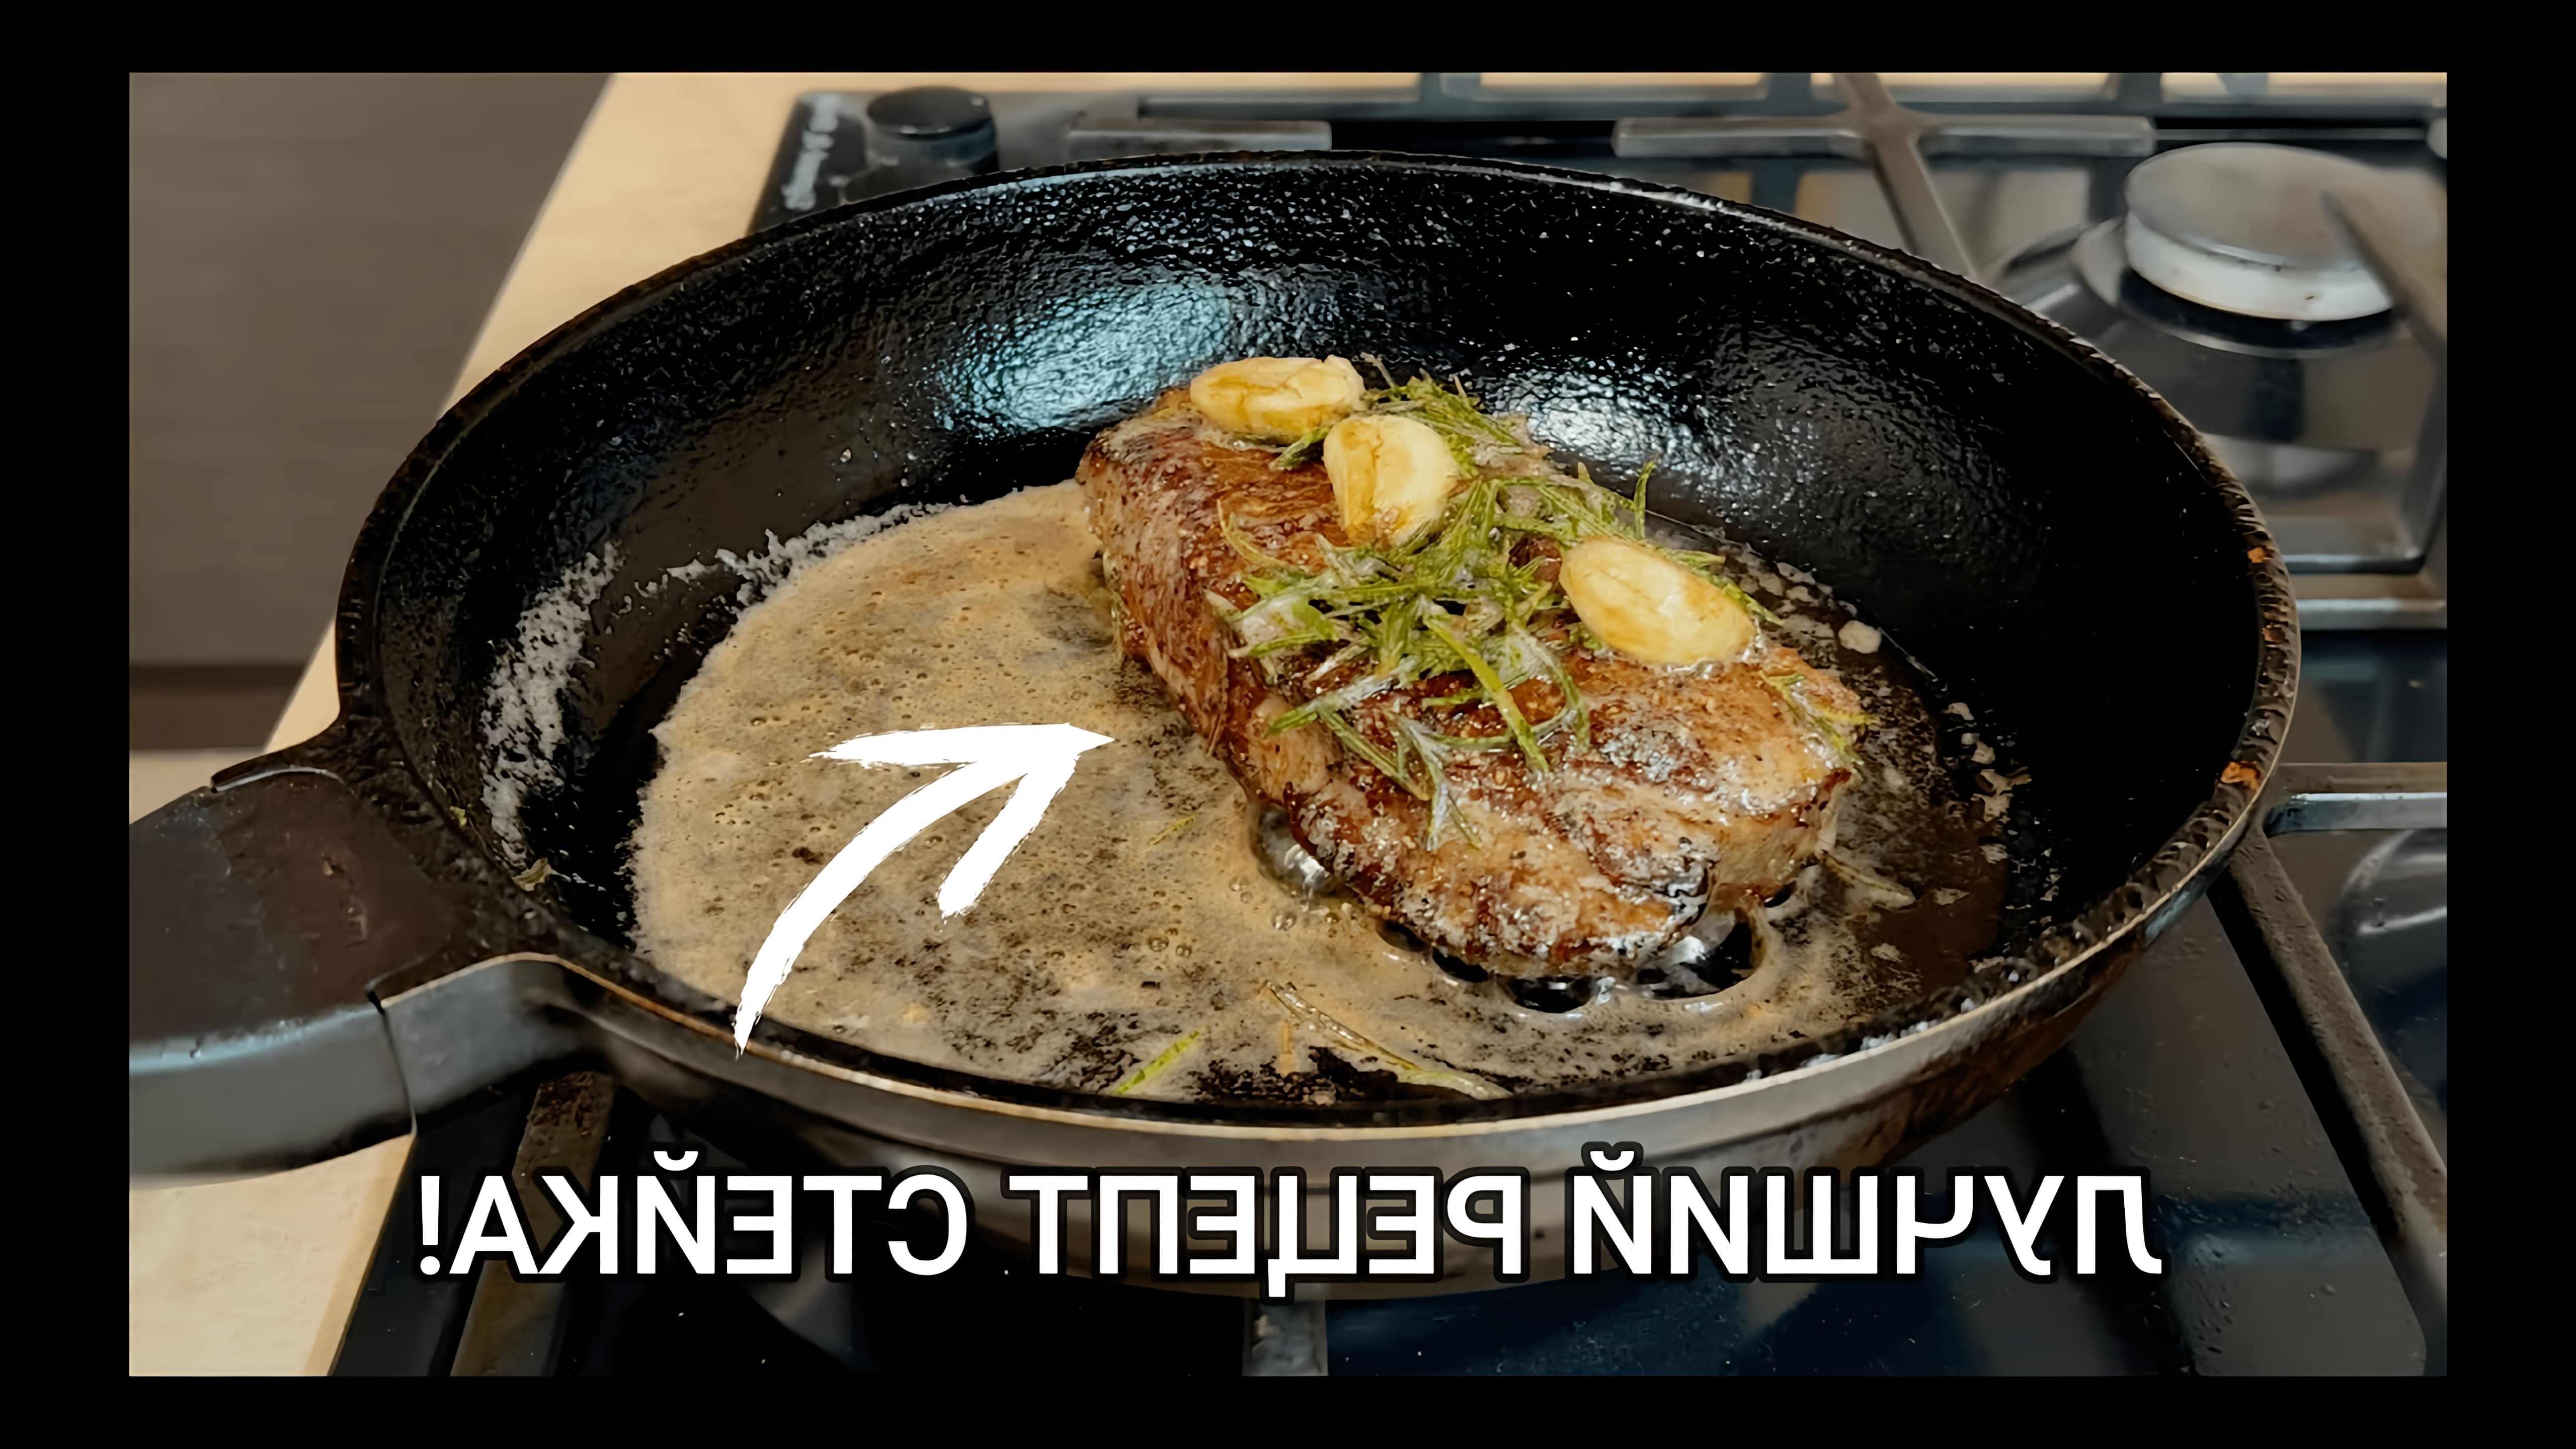 В этом видео демонстрируется рецепт приготовления стейка из говядины